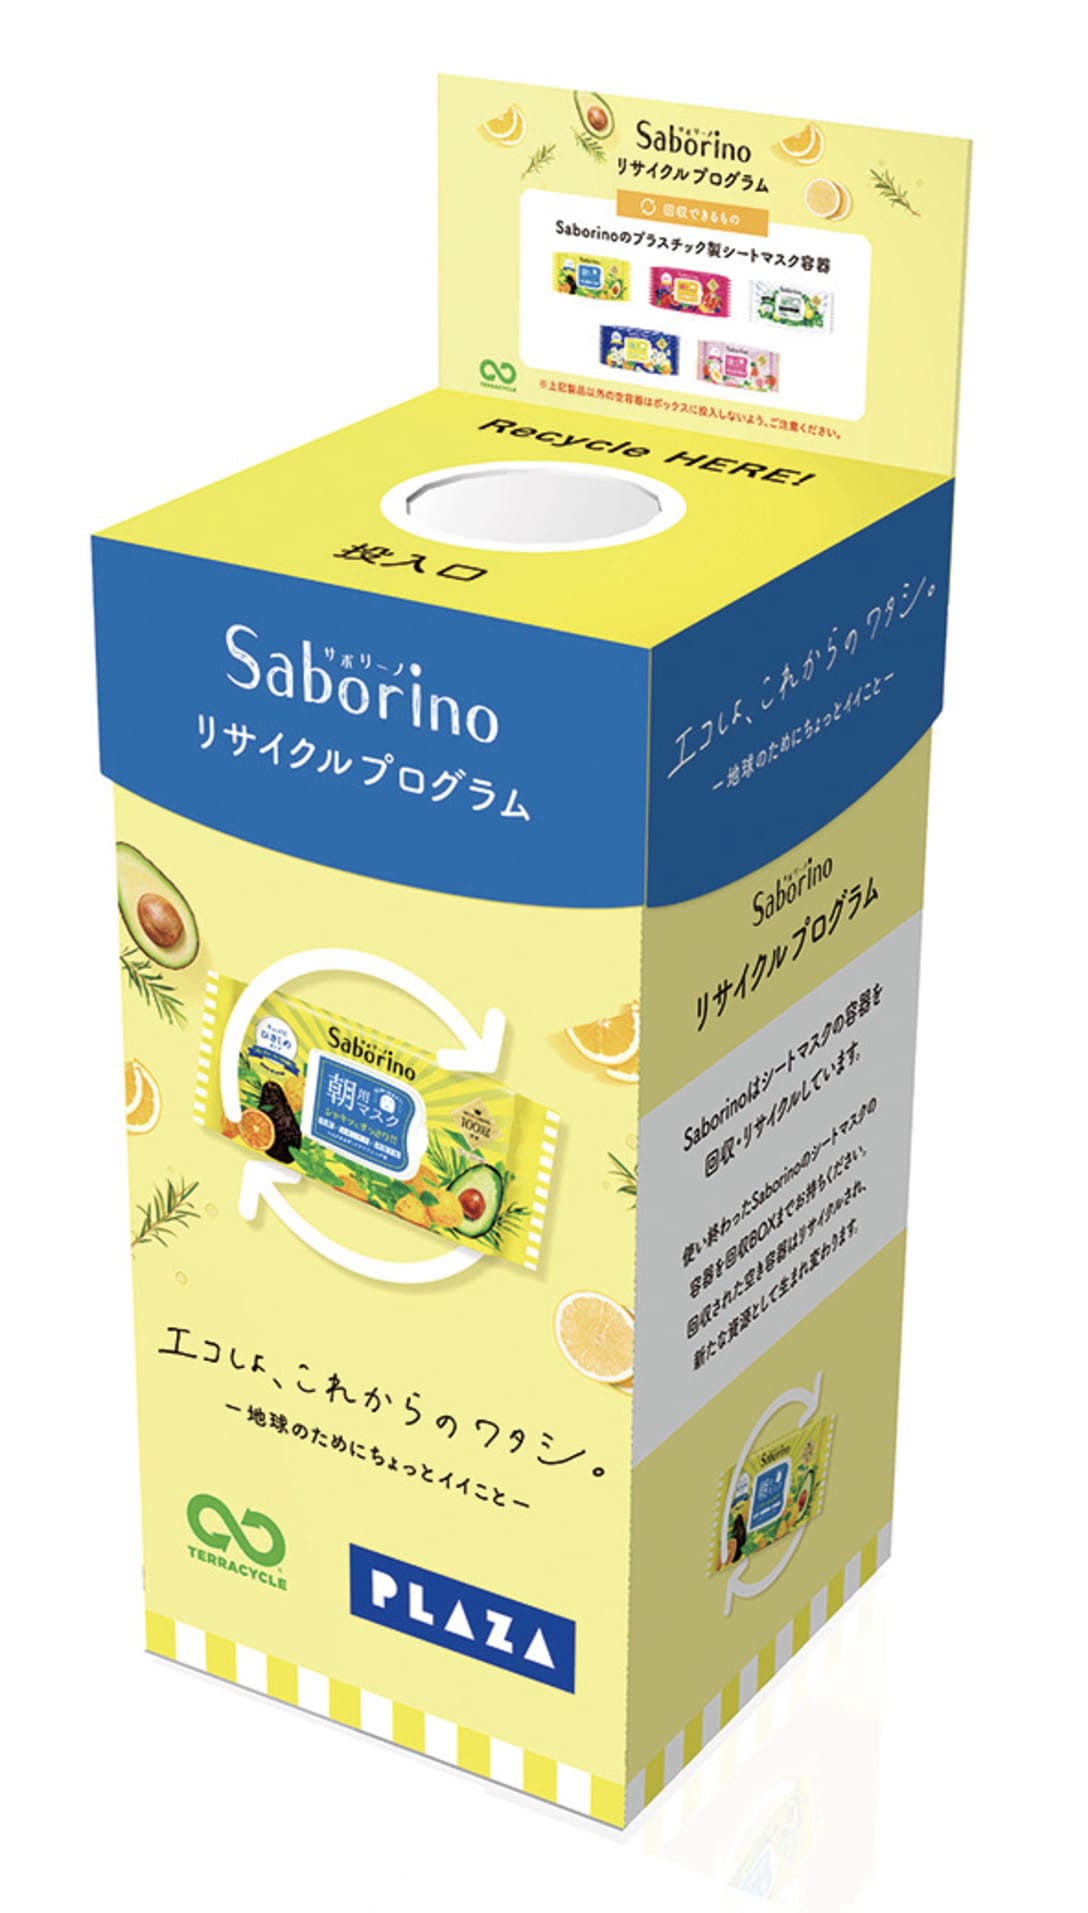 「サボリーノ」回収ボックスイメージ Image by BCLカンパニー